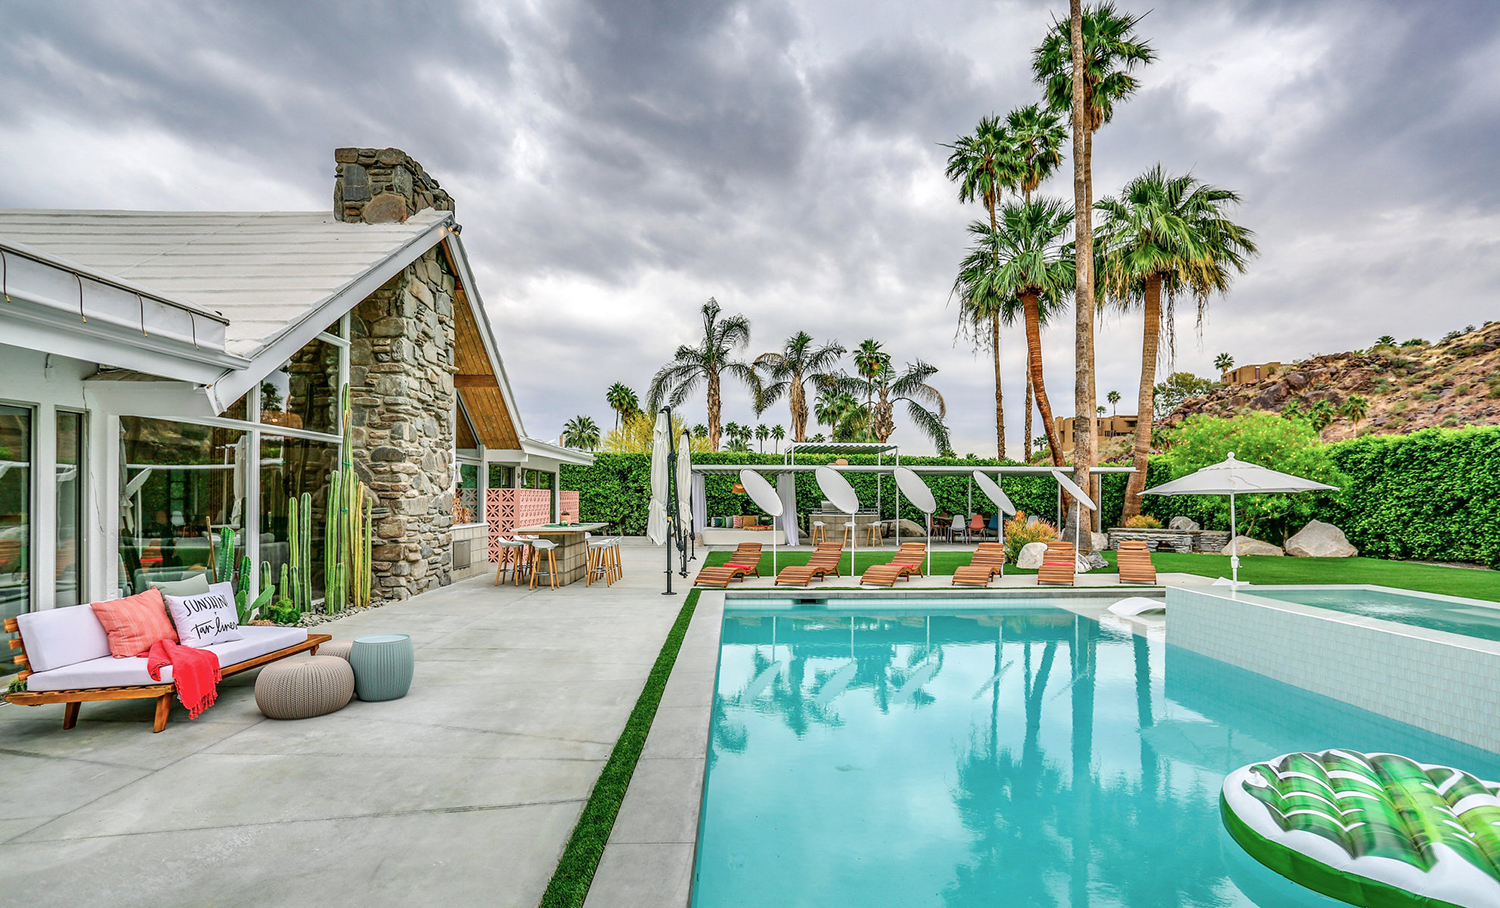 Palm Springs A-Frame House